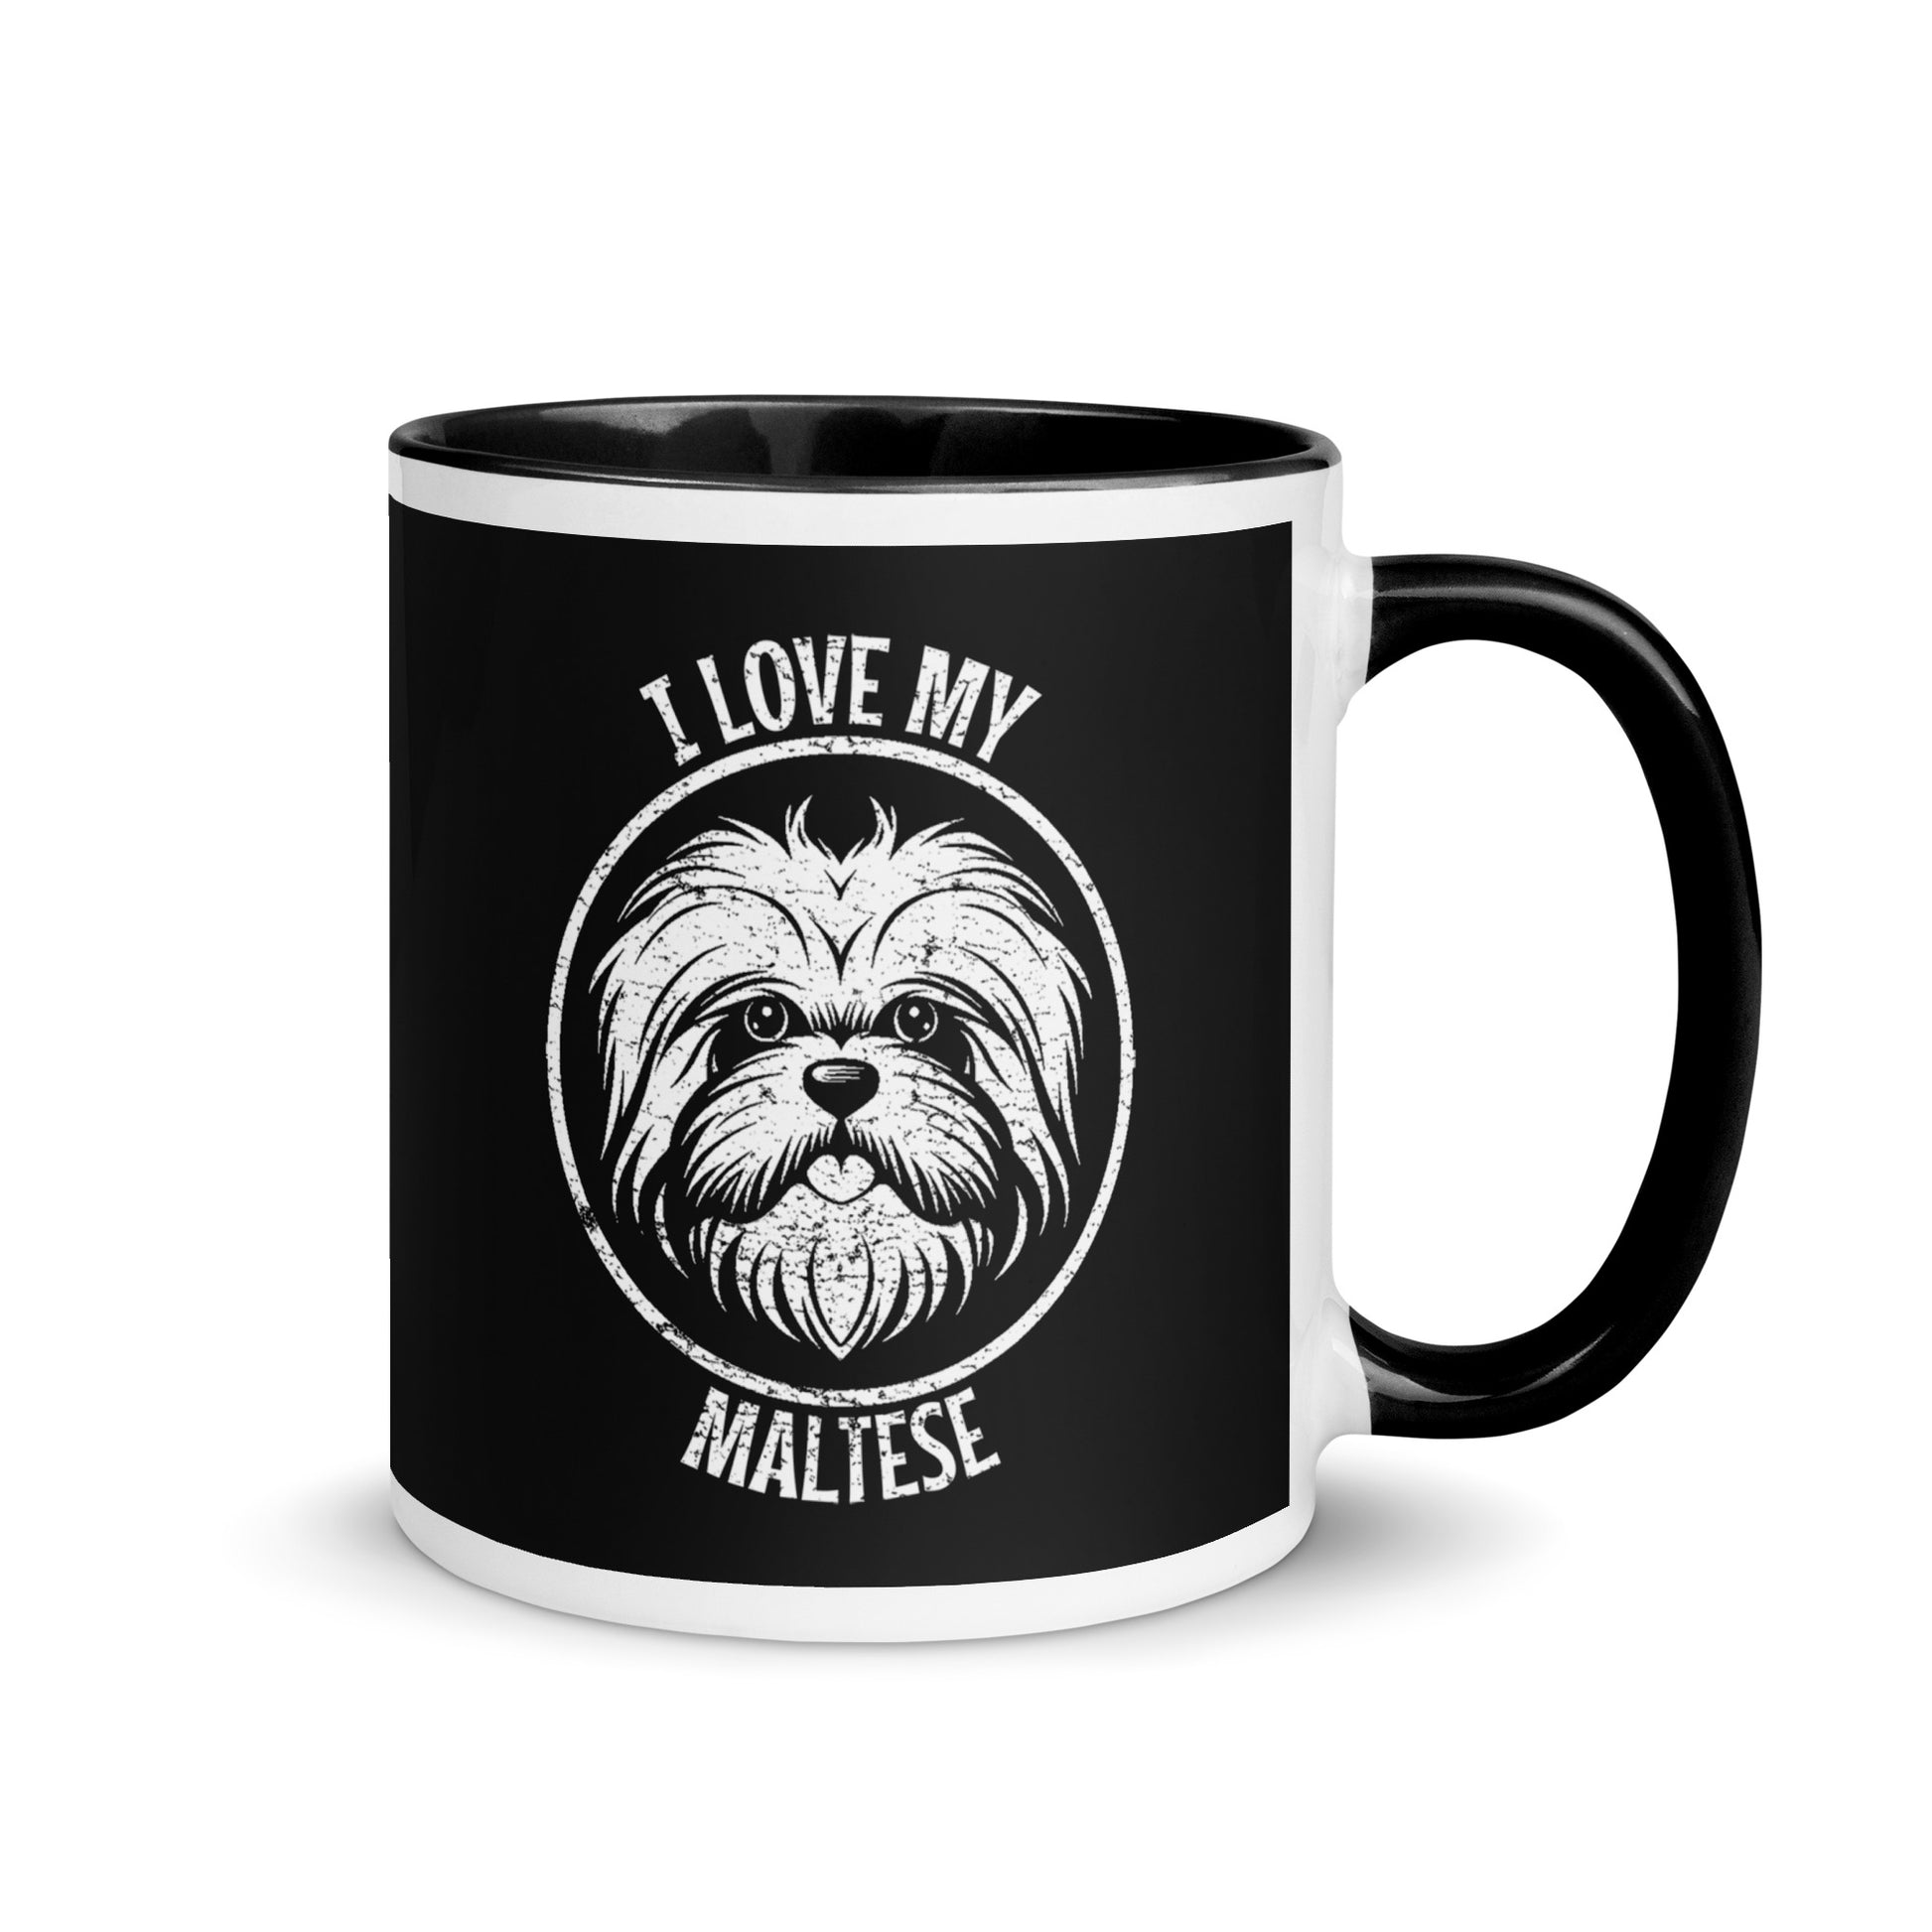 Maltese Mug, Maltese gift, gift for dog mom, custom dog gift, dog owner gift, pet memorial gift